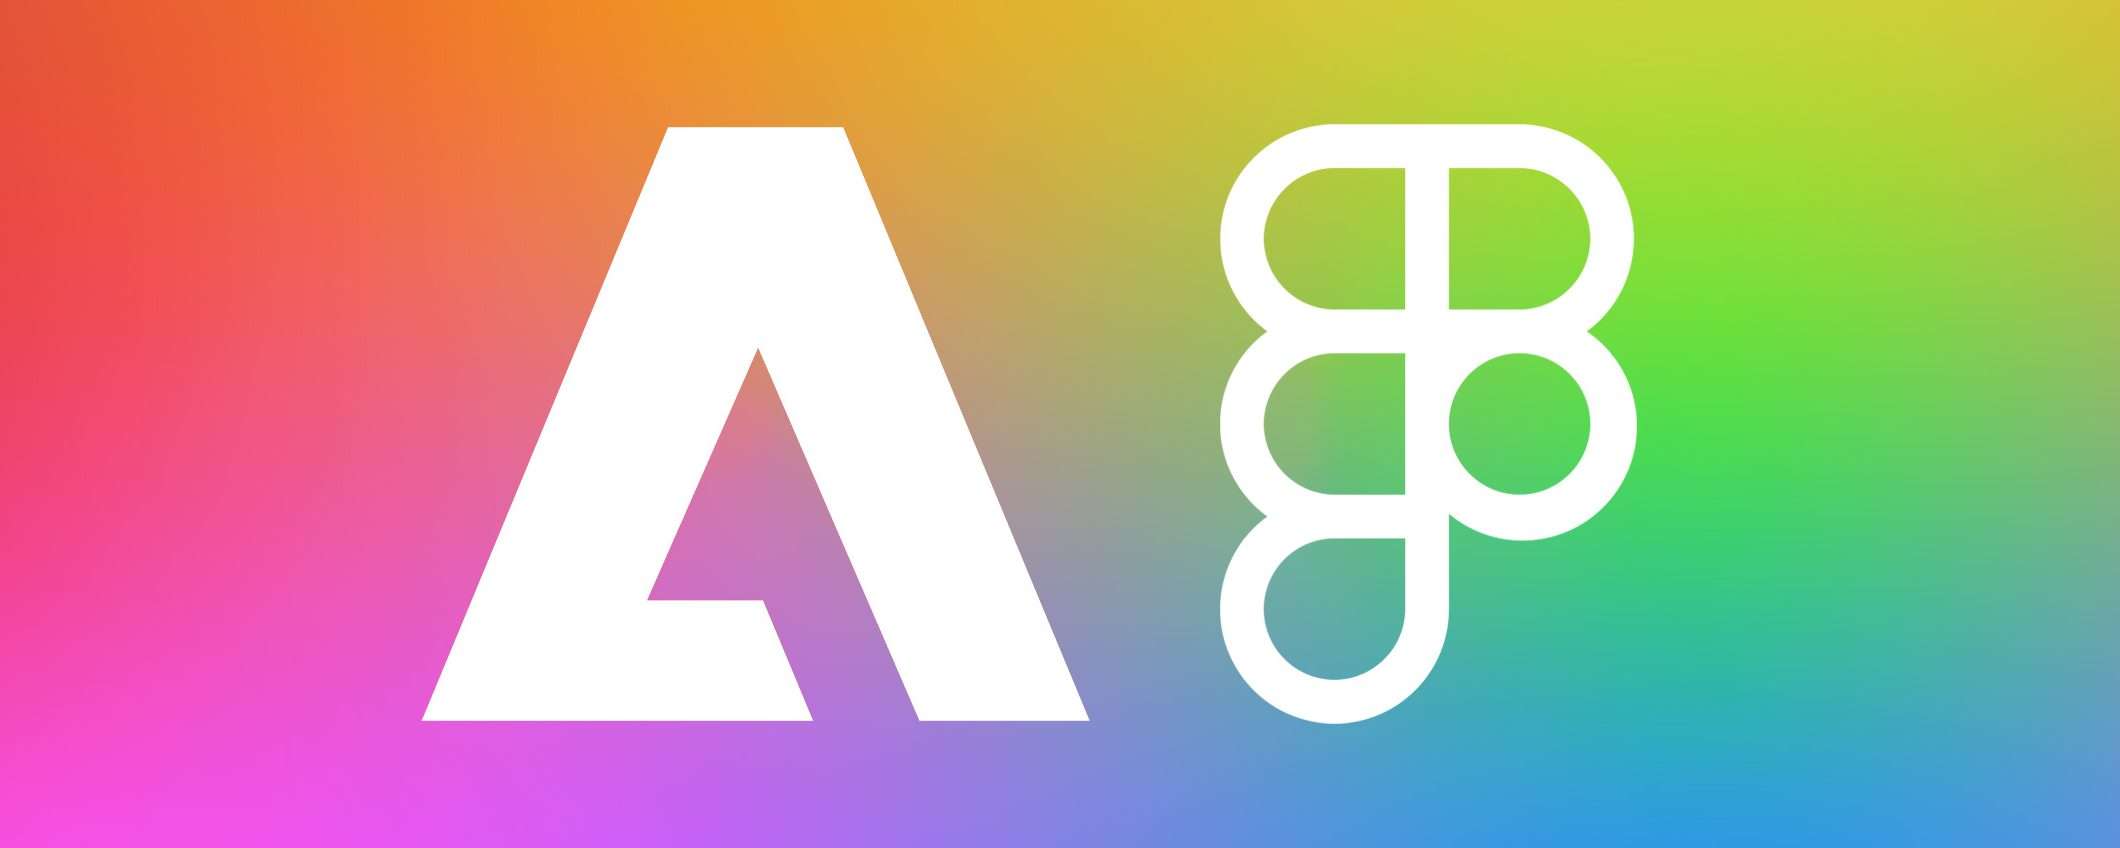 Adobe rinuncia all'acquisizione di Figma